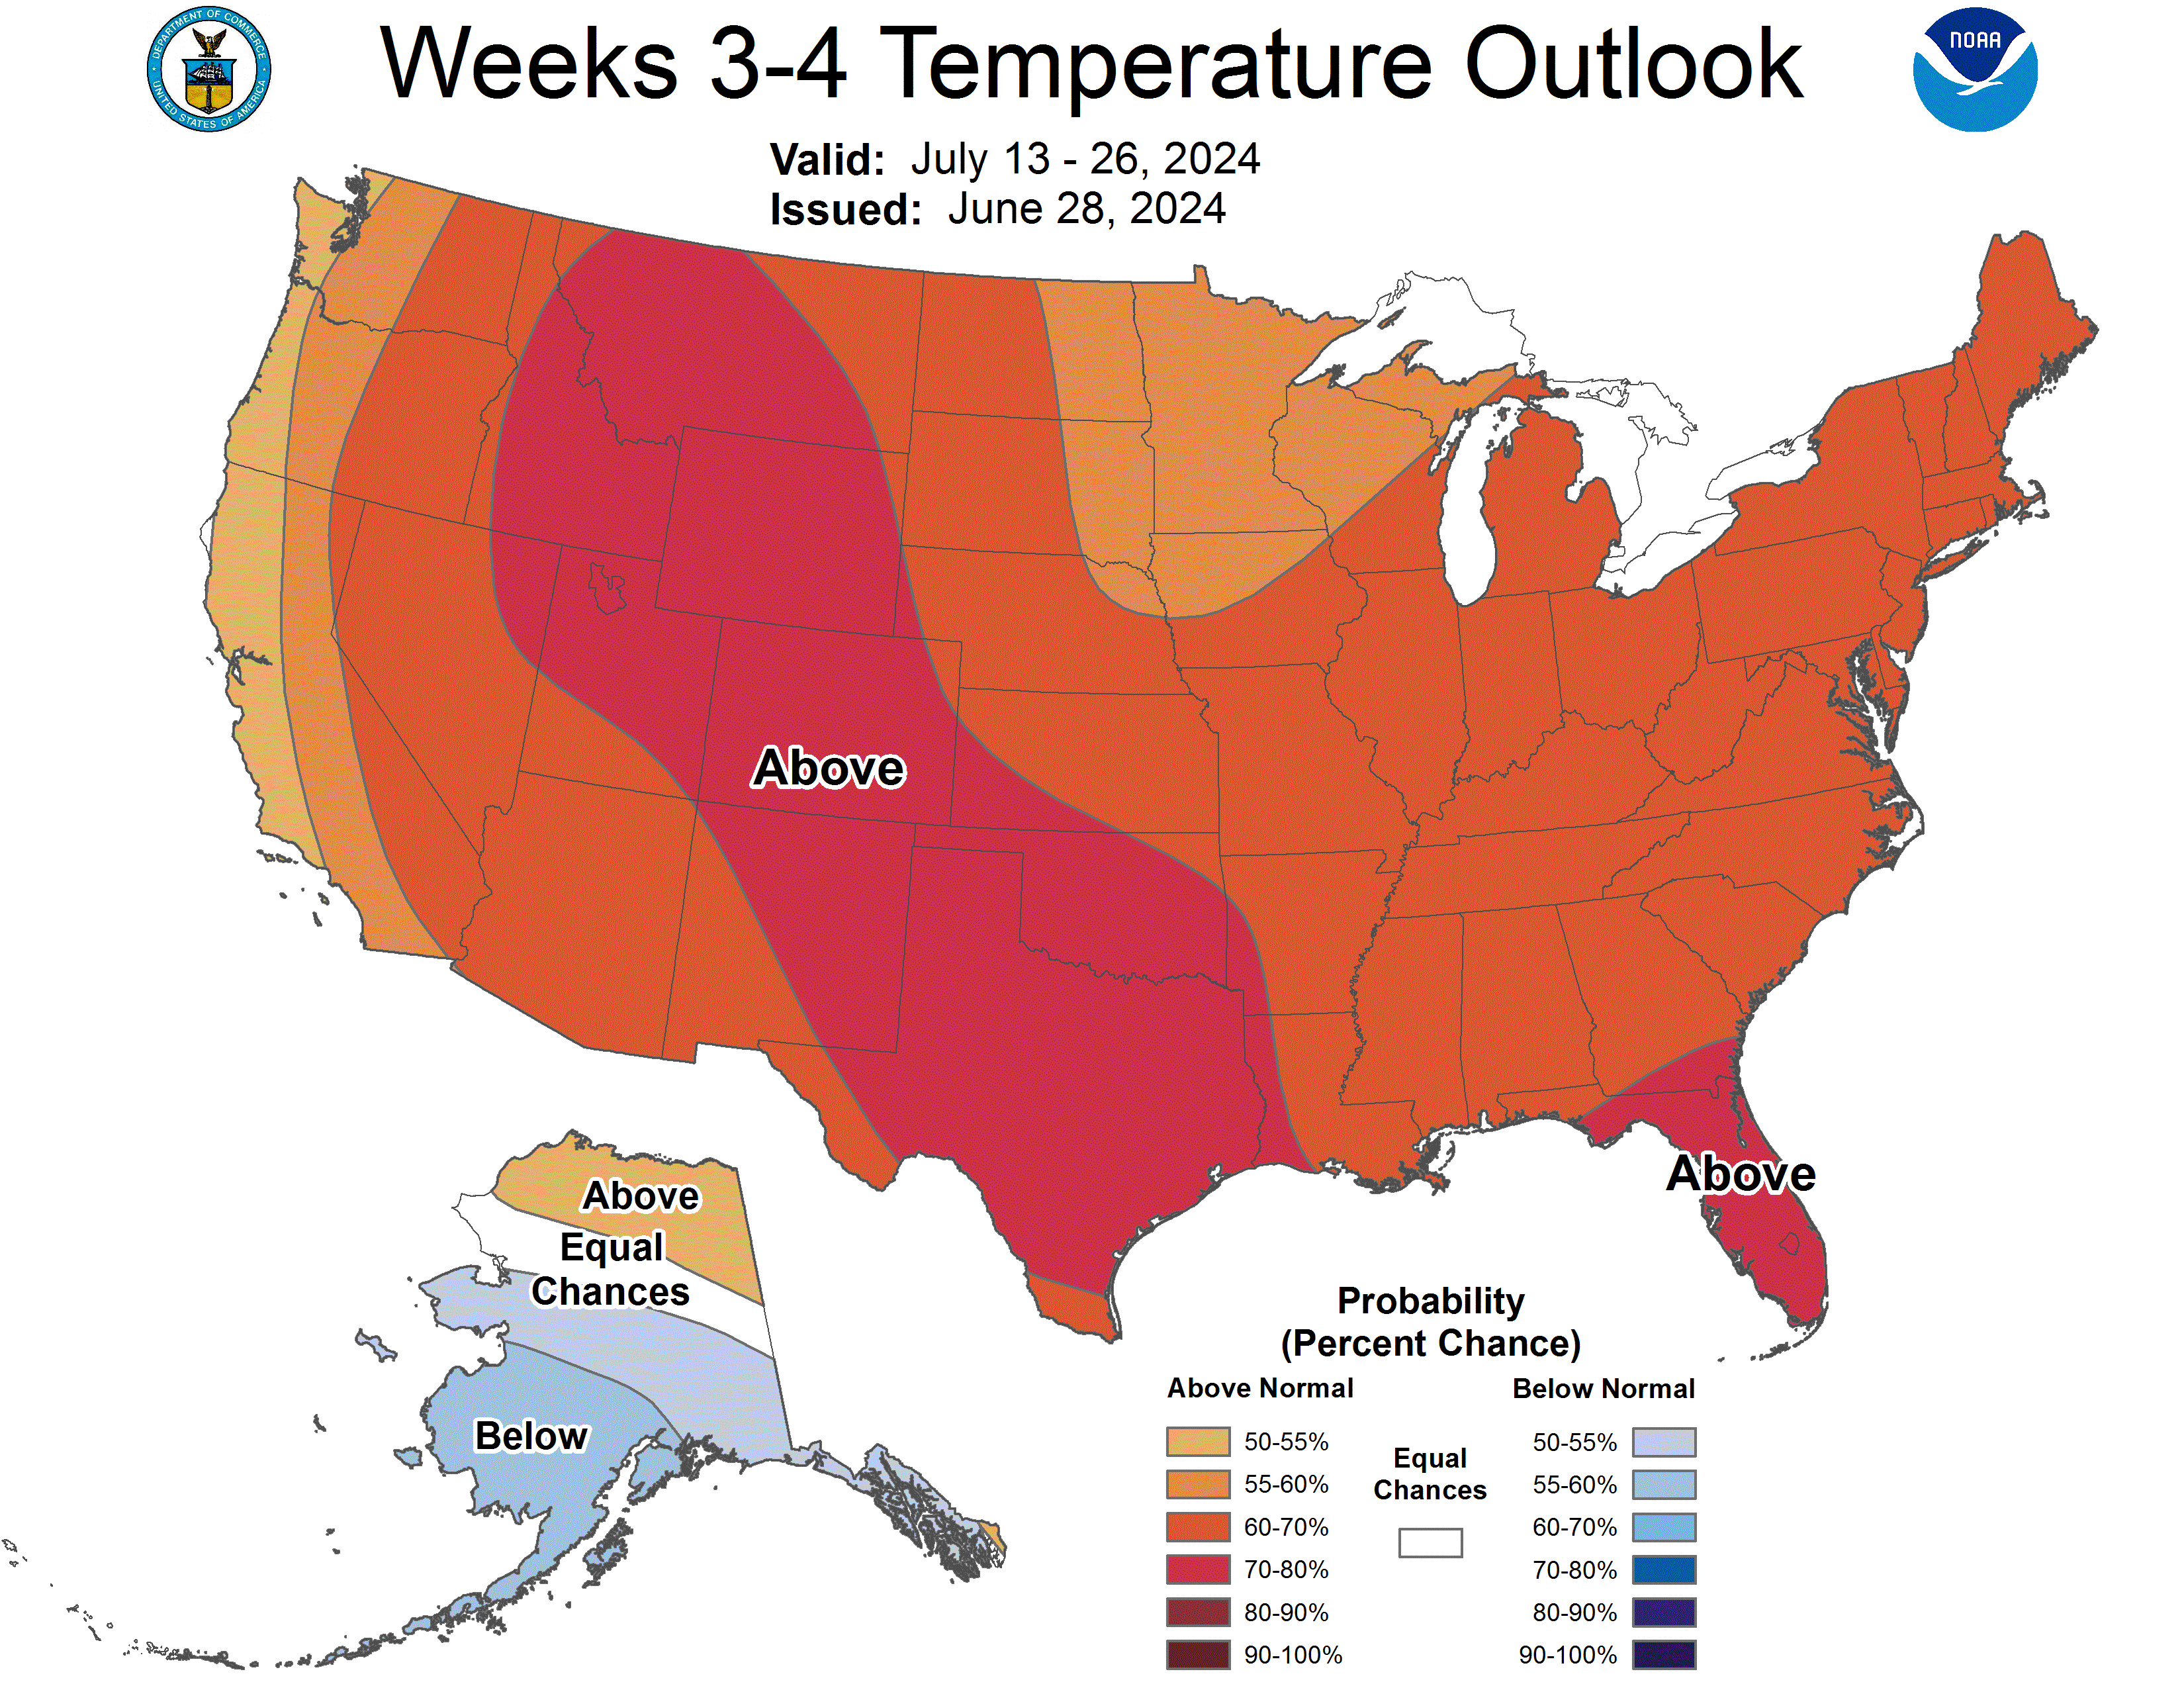 Week 3-4 temperature outlook